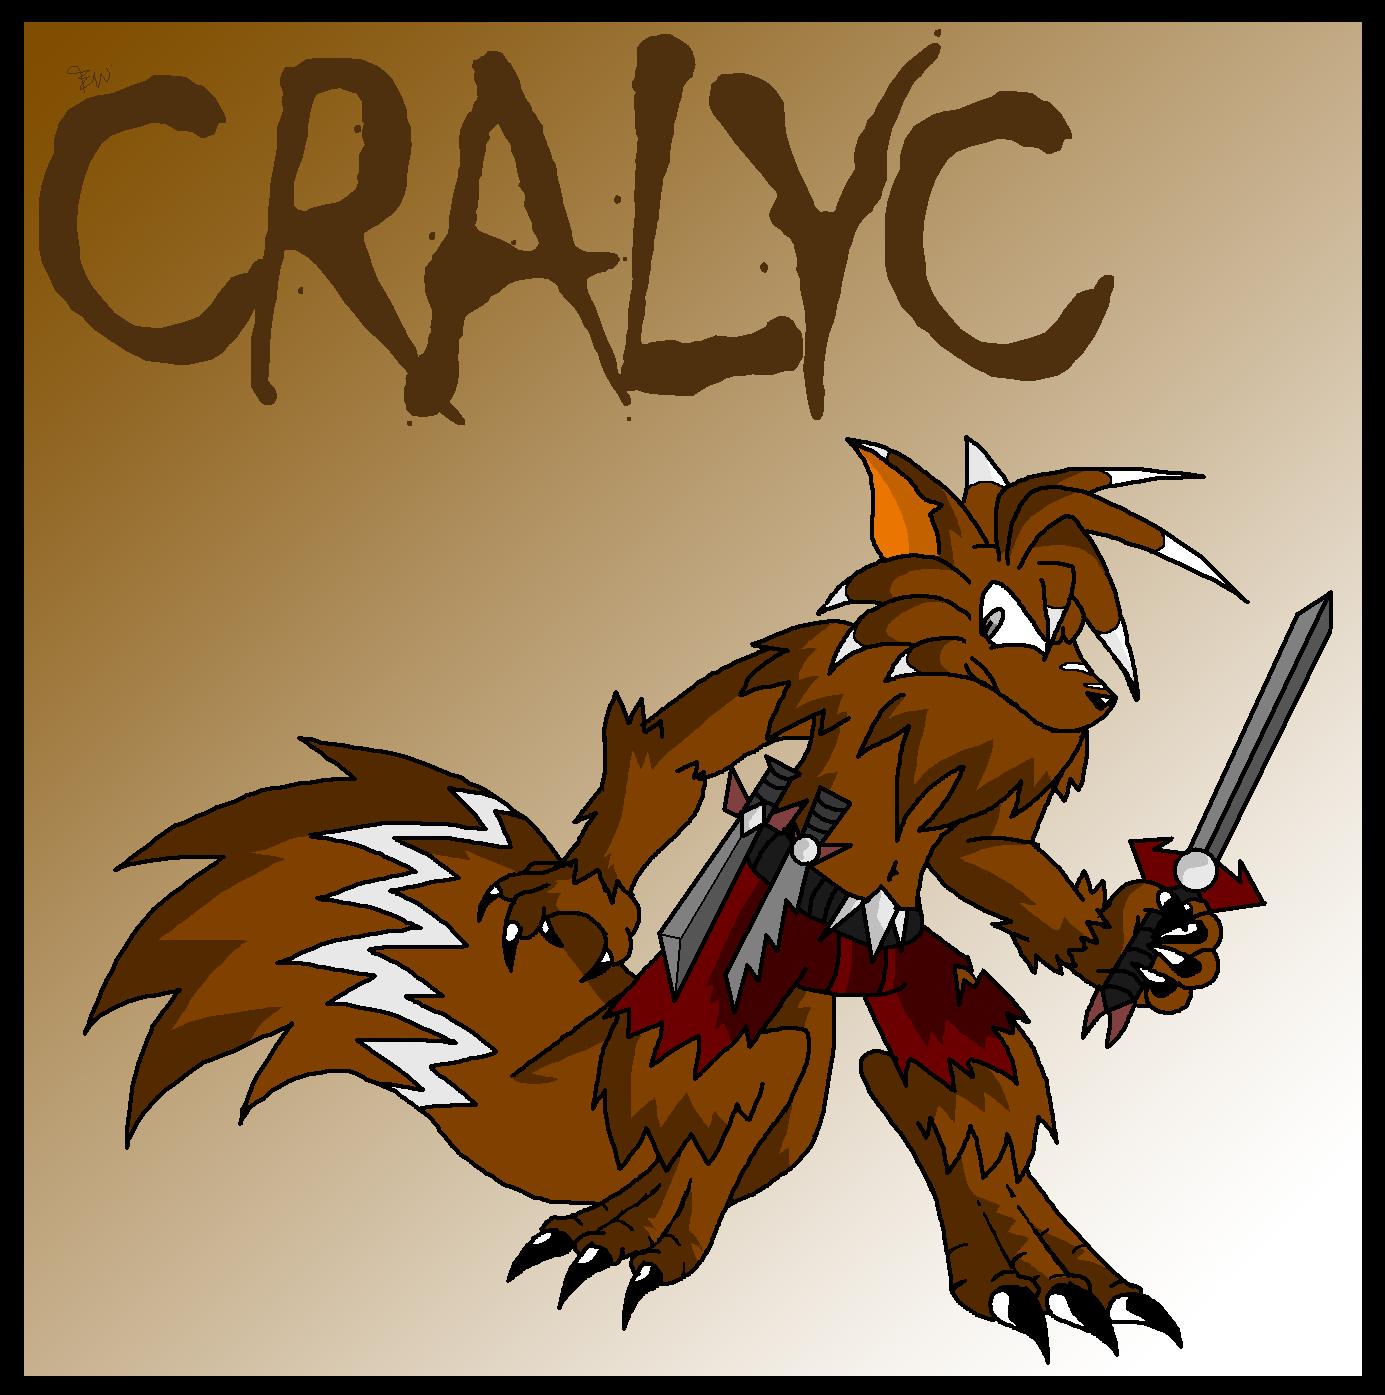 Werewolf Cralyc by Edge14